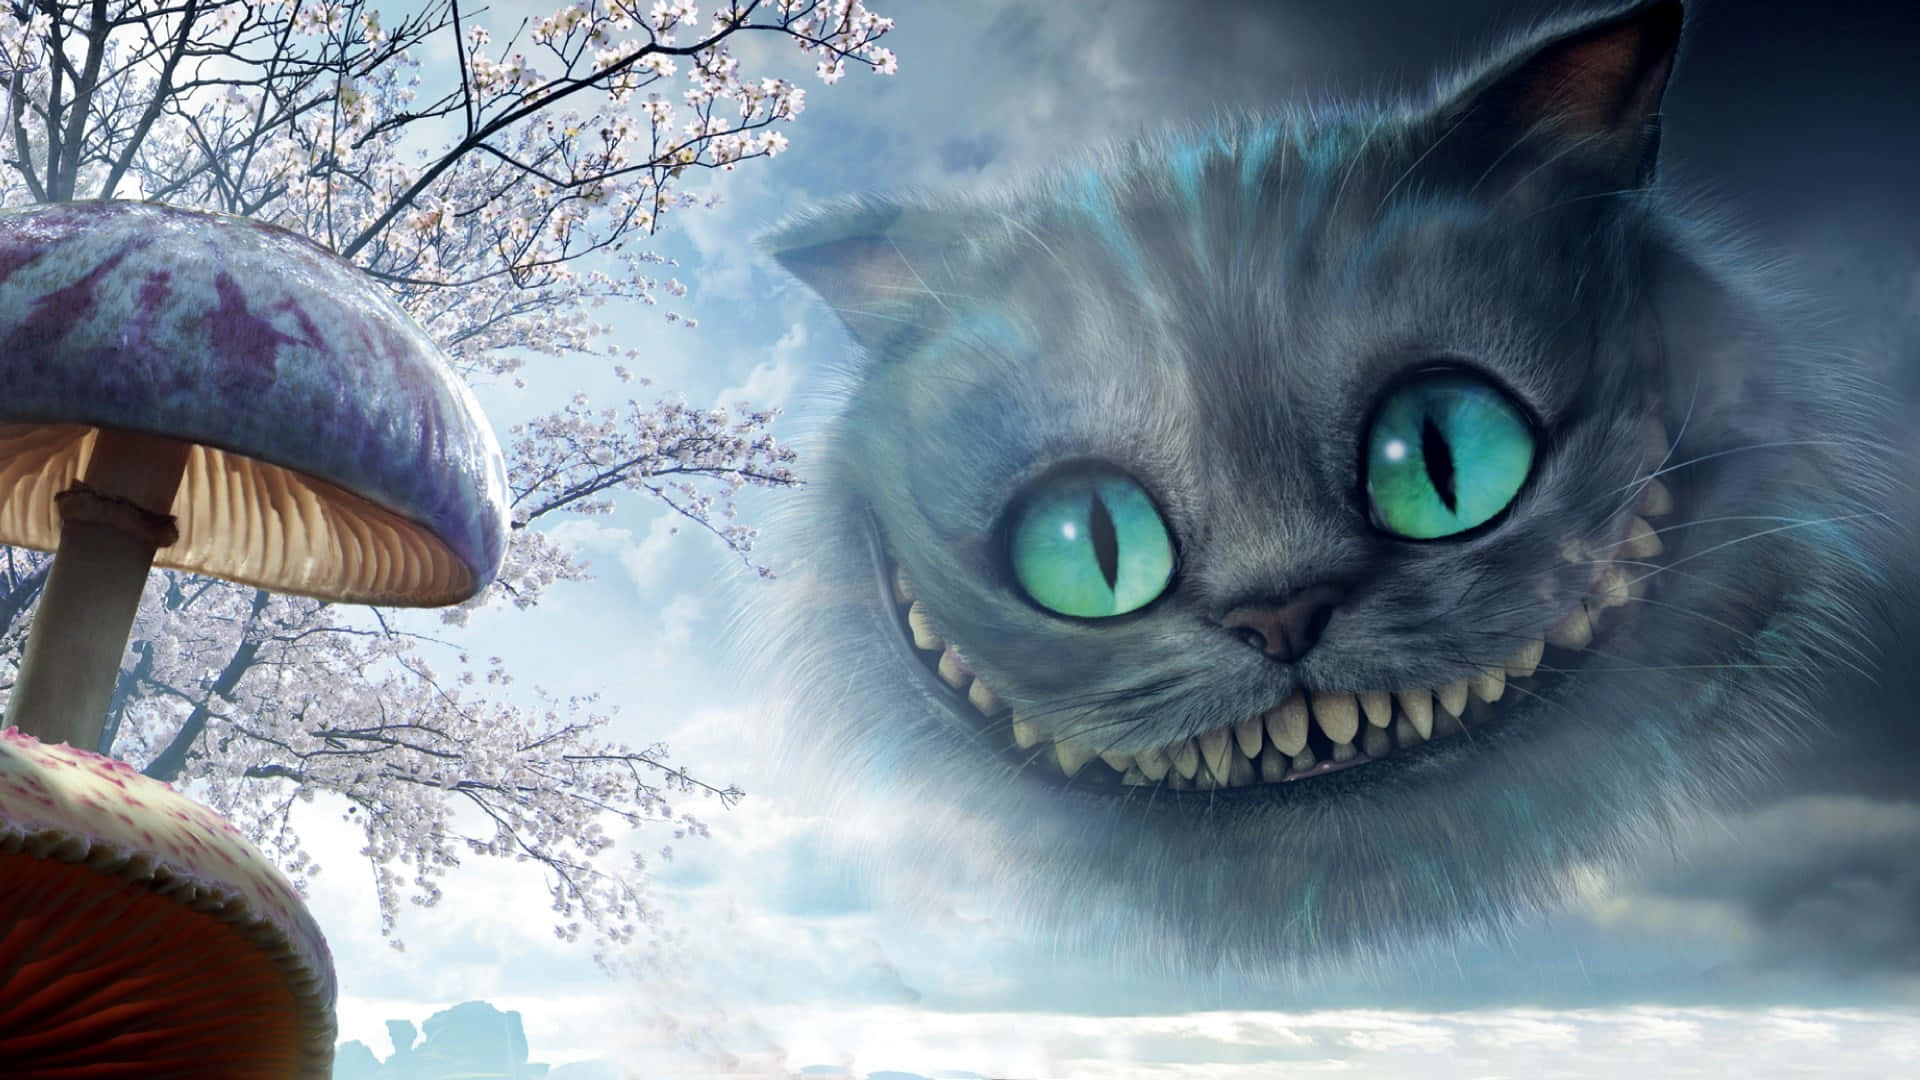 En kæmpe Cheshire Cat smiler snu i stjernelyset.